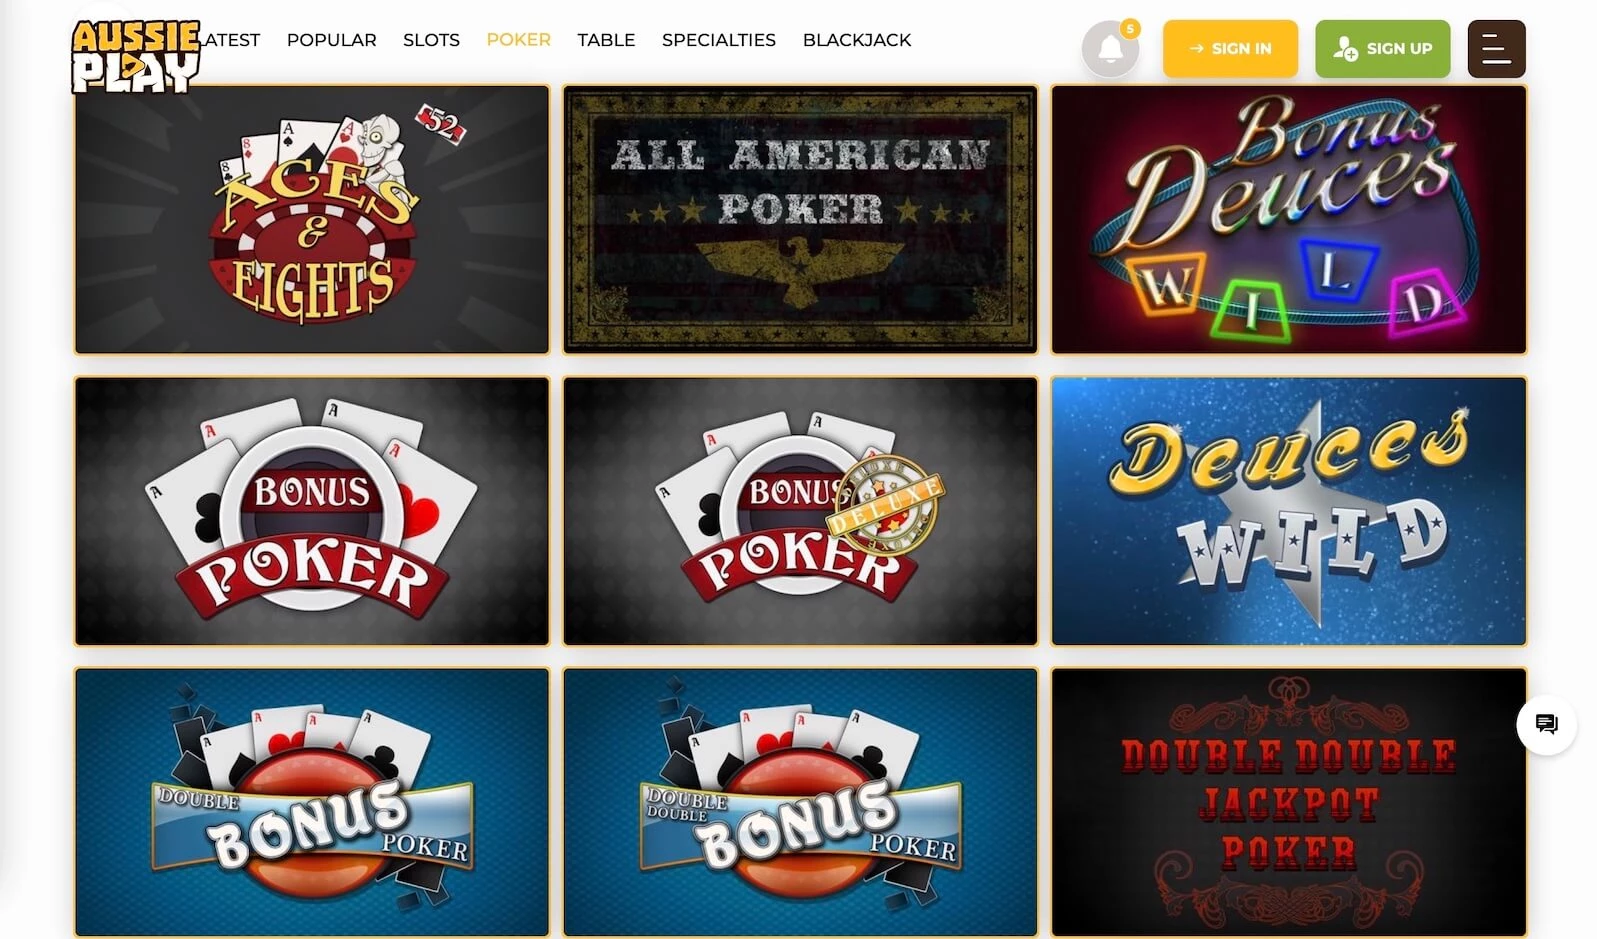 Aussie Play casino poker games